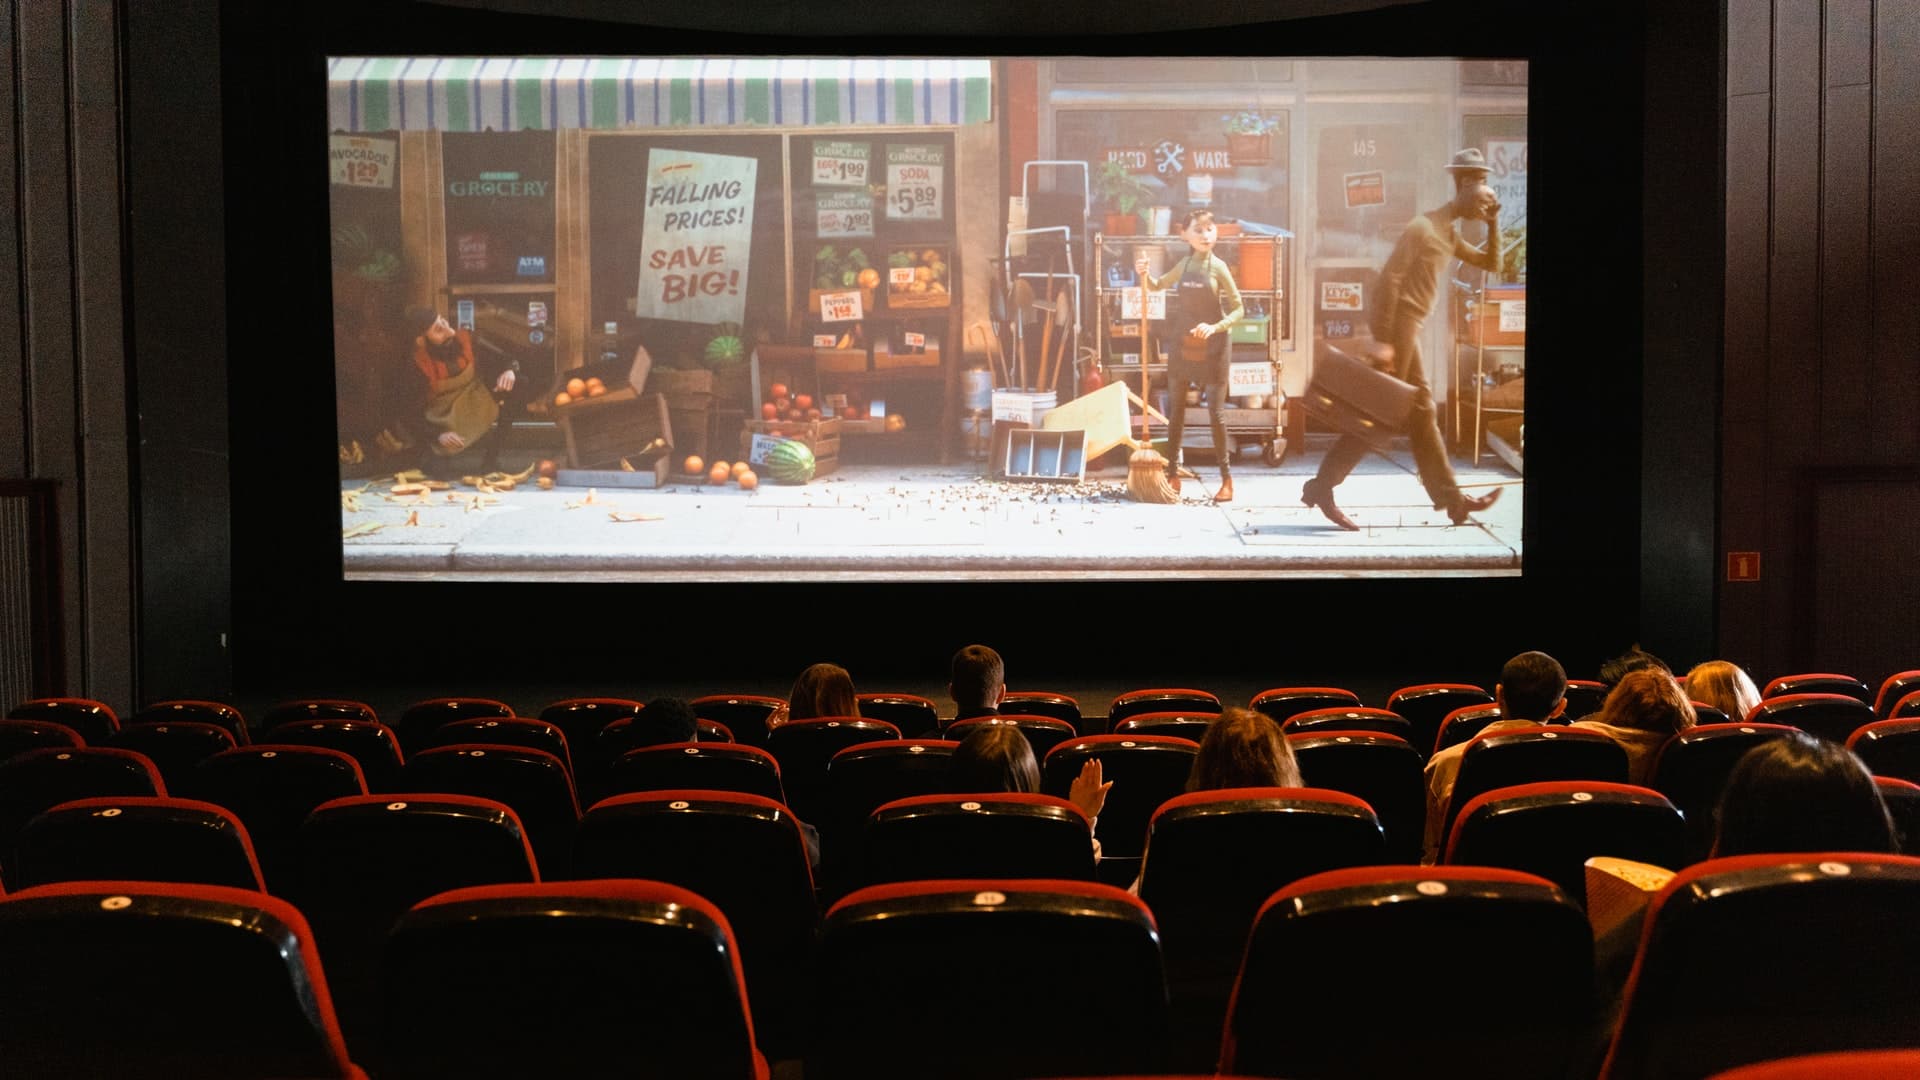 Bollywood rejoices as Maharashtra finally reopens cinemas